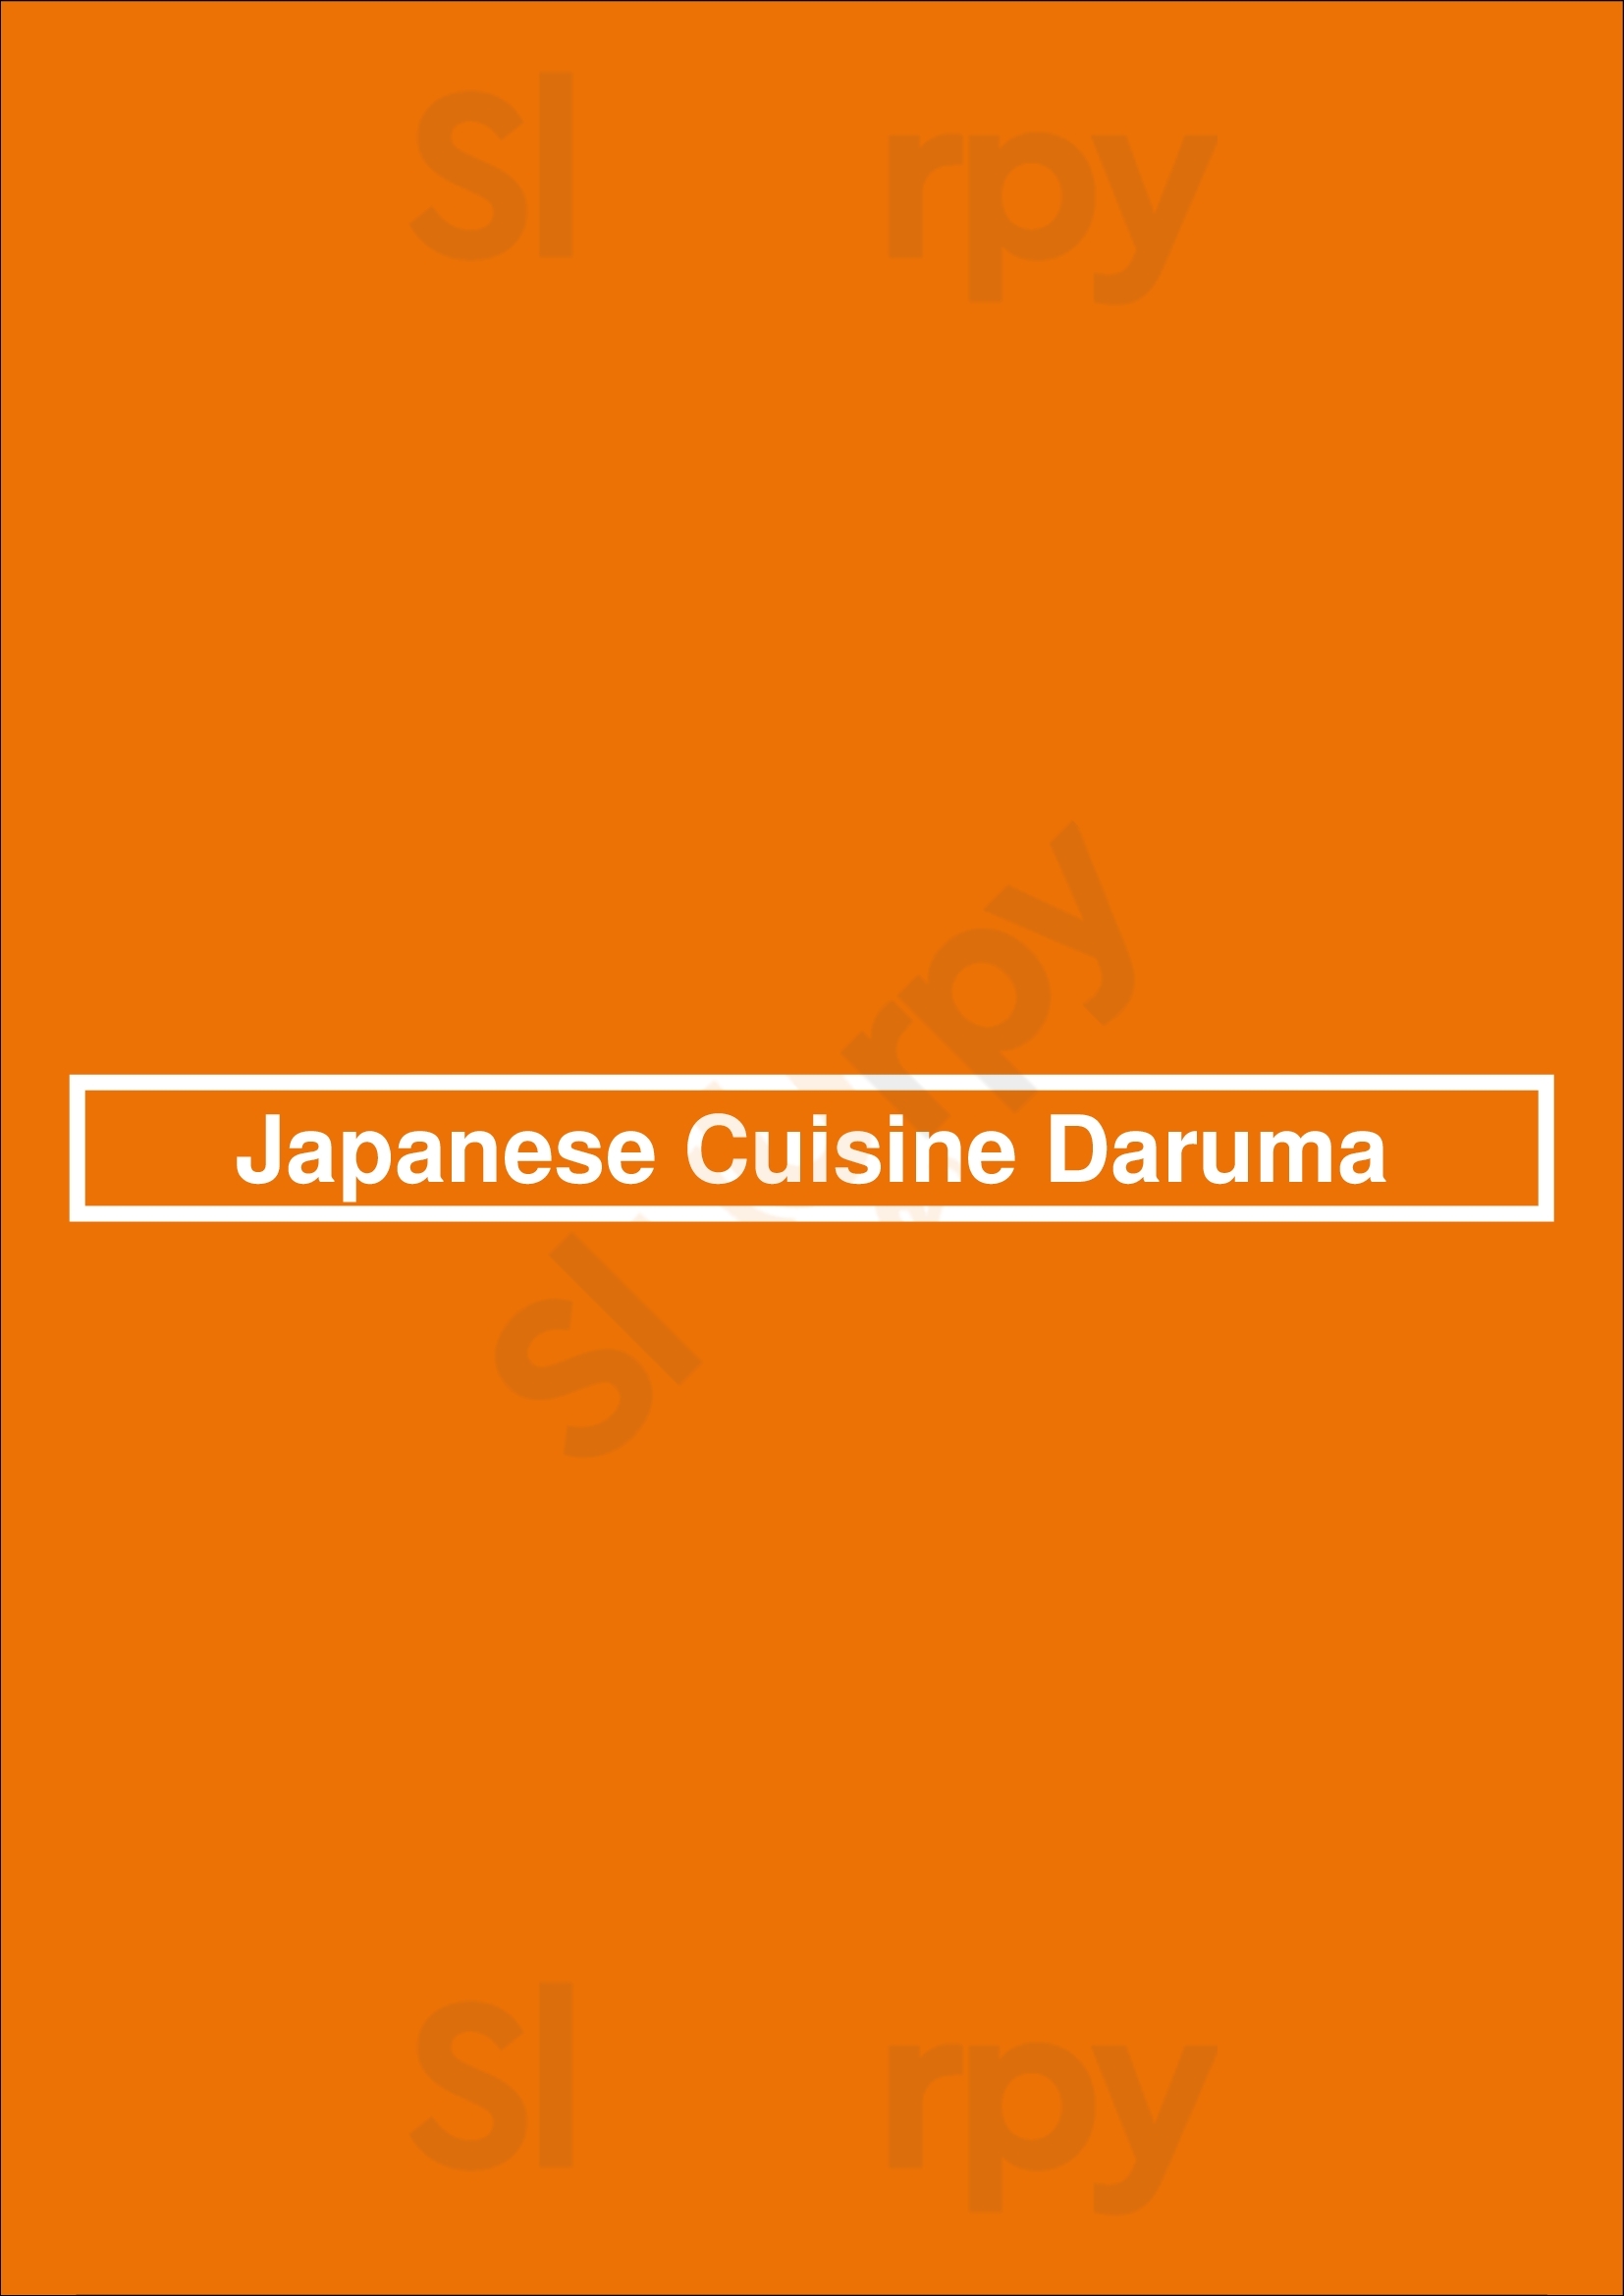 Japanese Cuisine Daruma Calgary Menu - 1